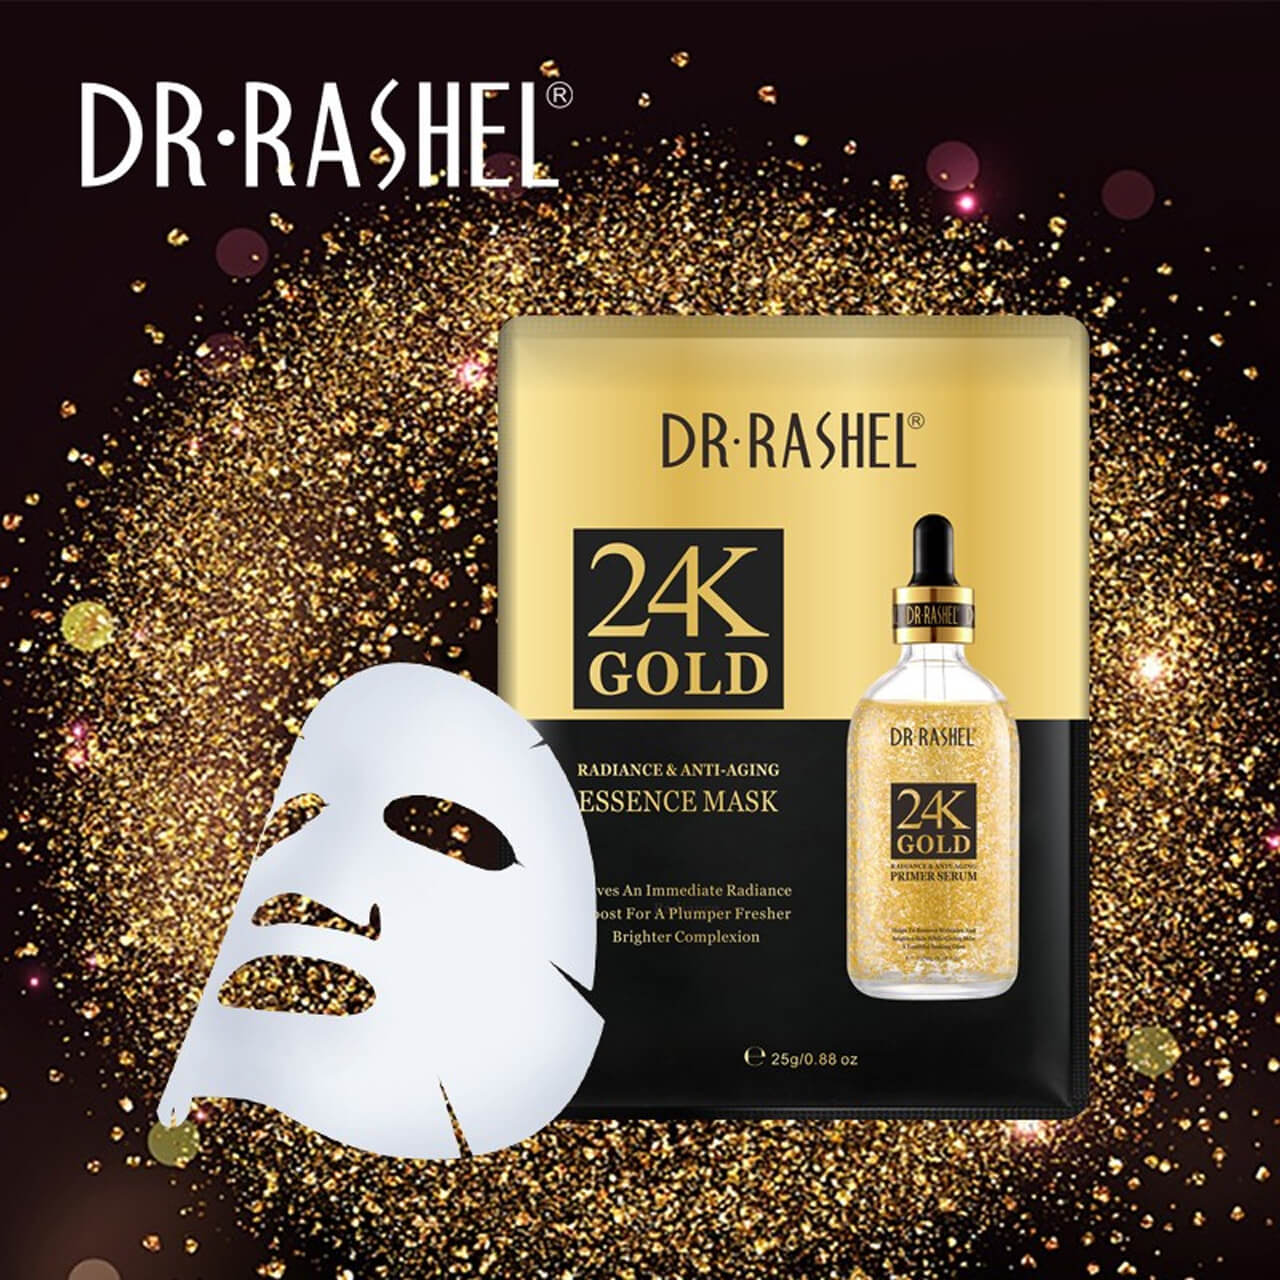 Dr Rashel 24K Gold Essence Mask 25 gms - DRL 1482